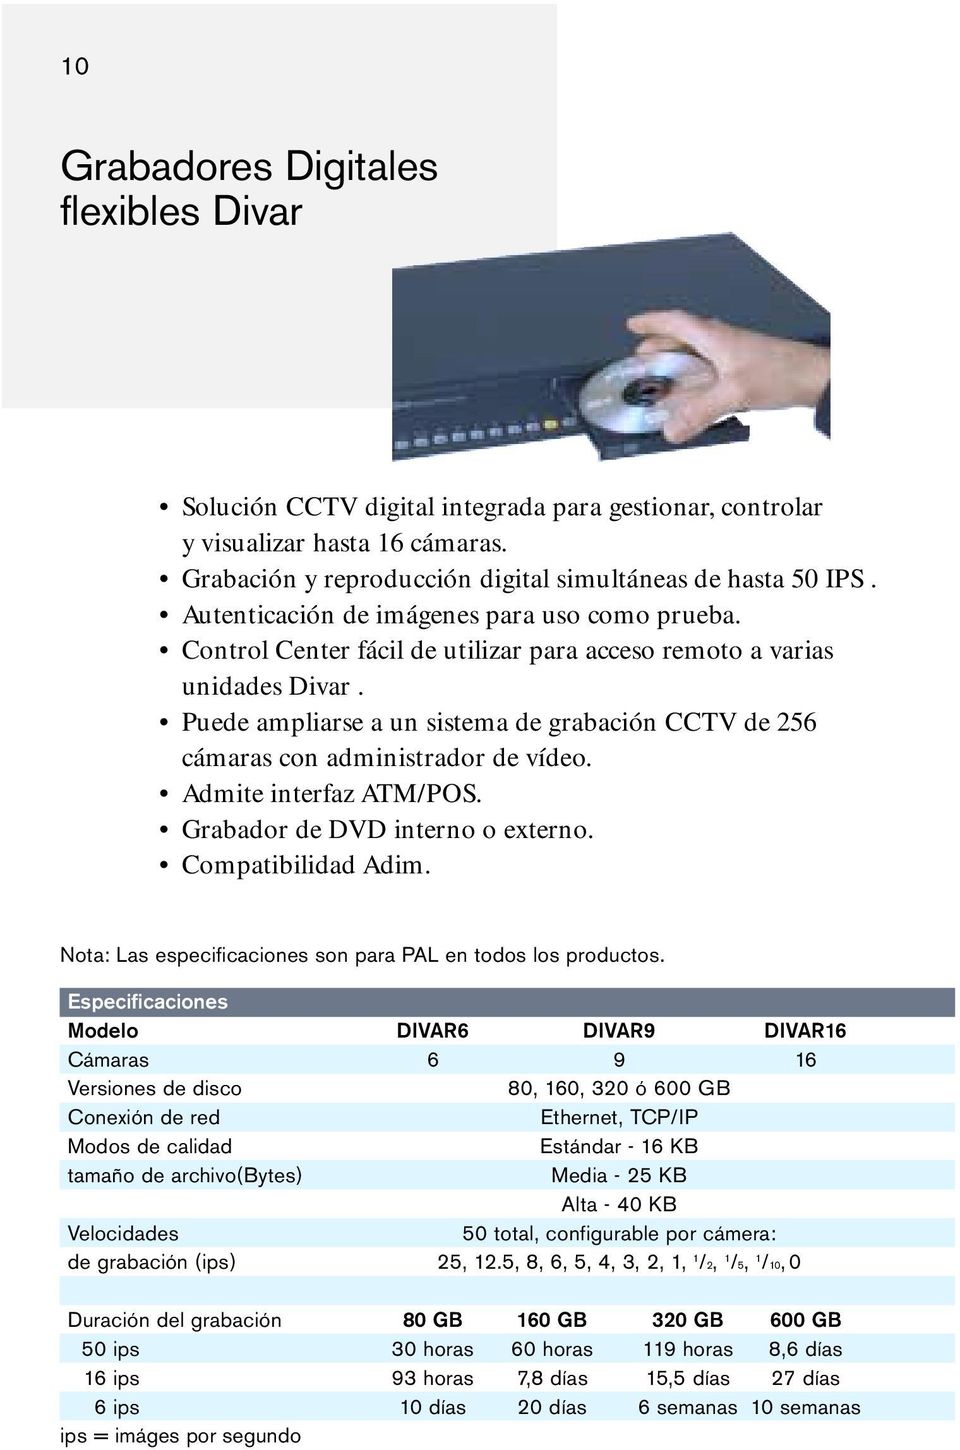 Puede ampliarse a un sistema de grabación CCTV de 256 cámaras con administrador de vídeo. Admite interfaz ATM/POS. Grabador de DVD interno o externo. Compatibilidad Adim.